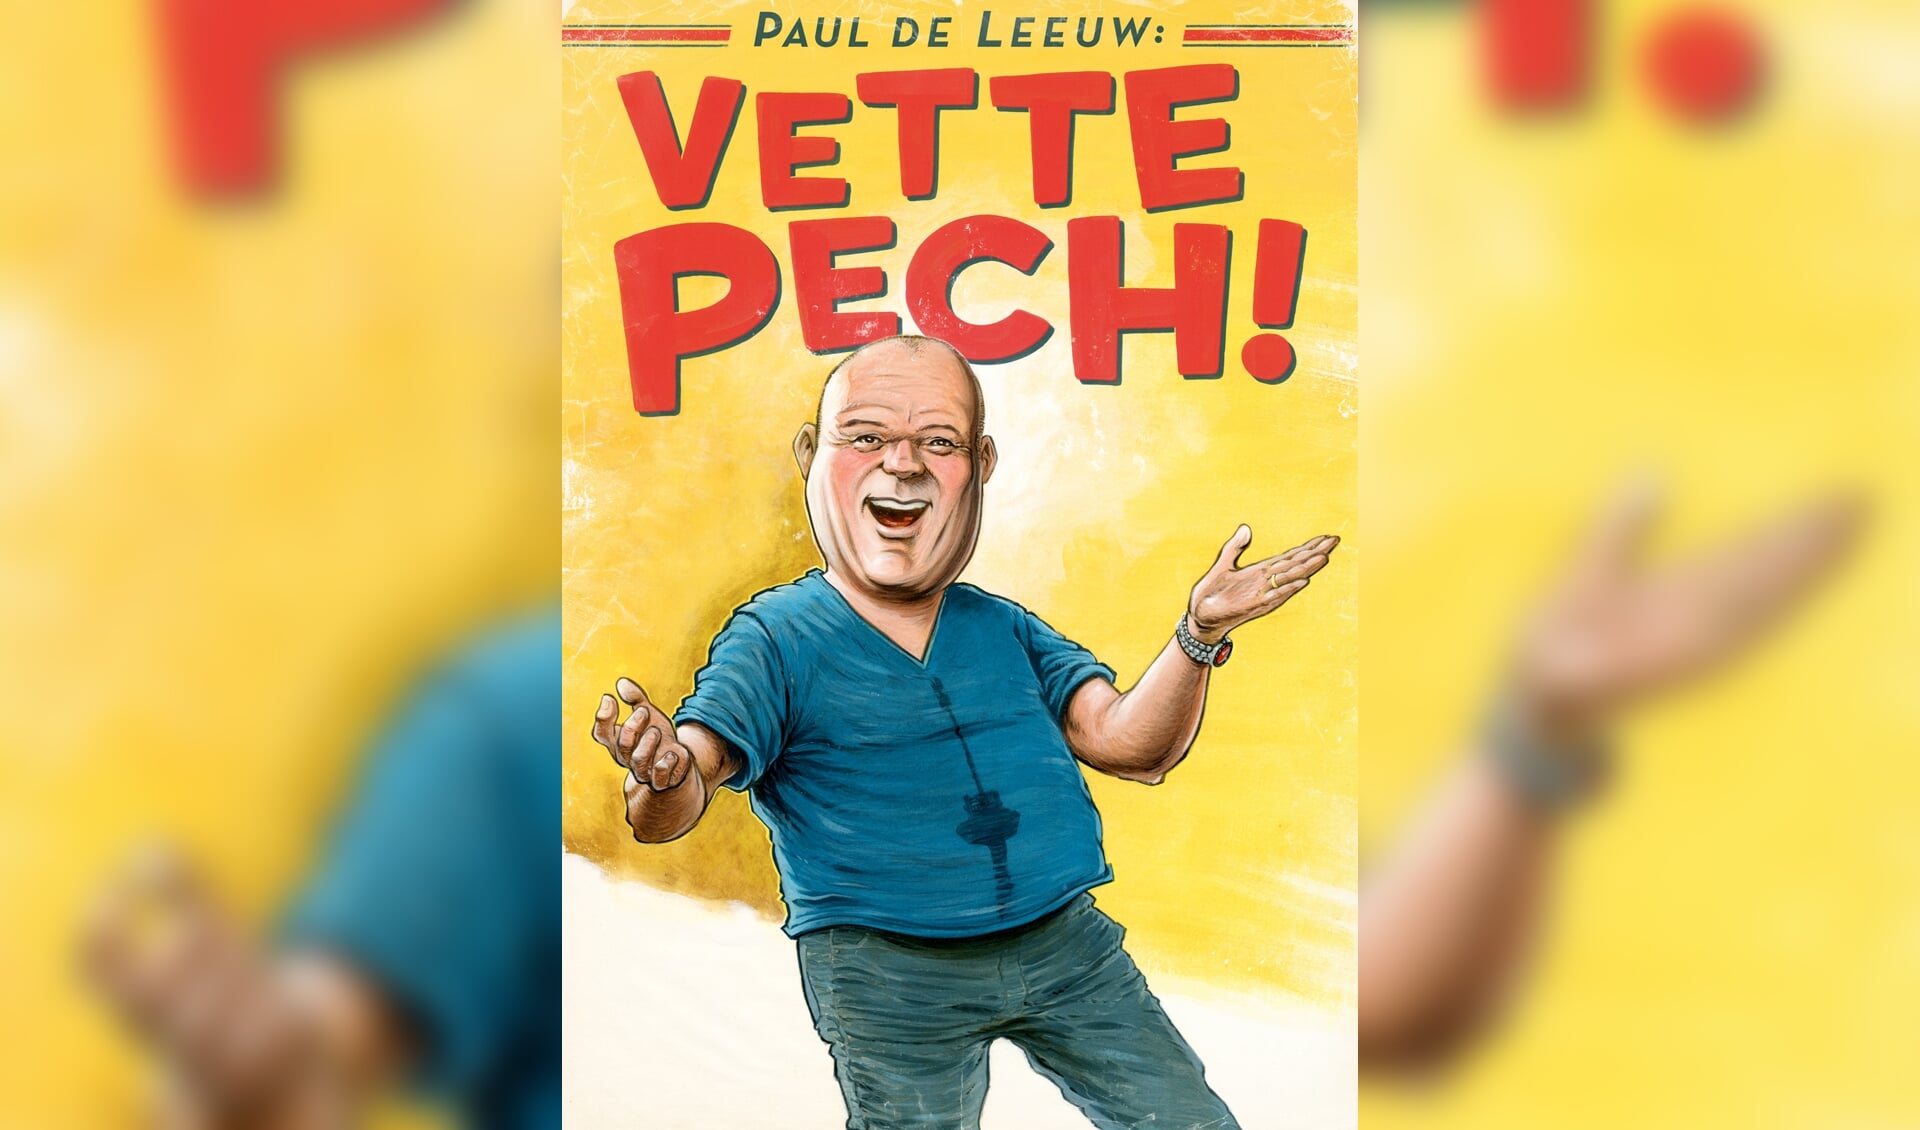 Paul de Leeuw met zijn voorstelling Vette Pech!